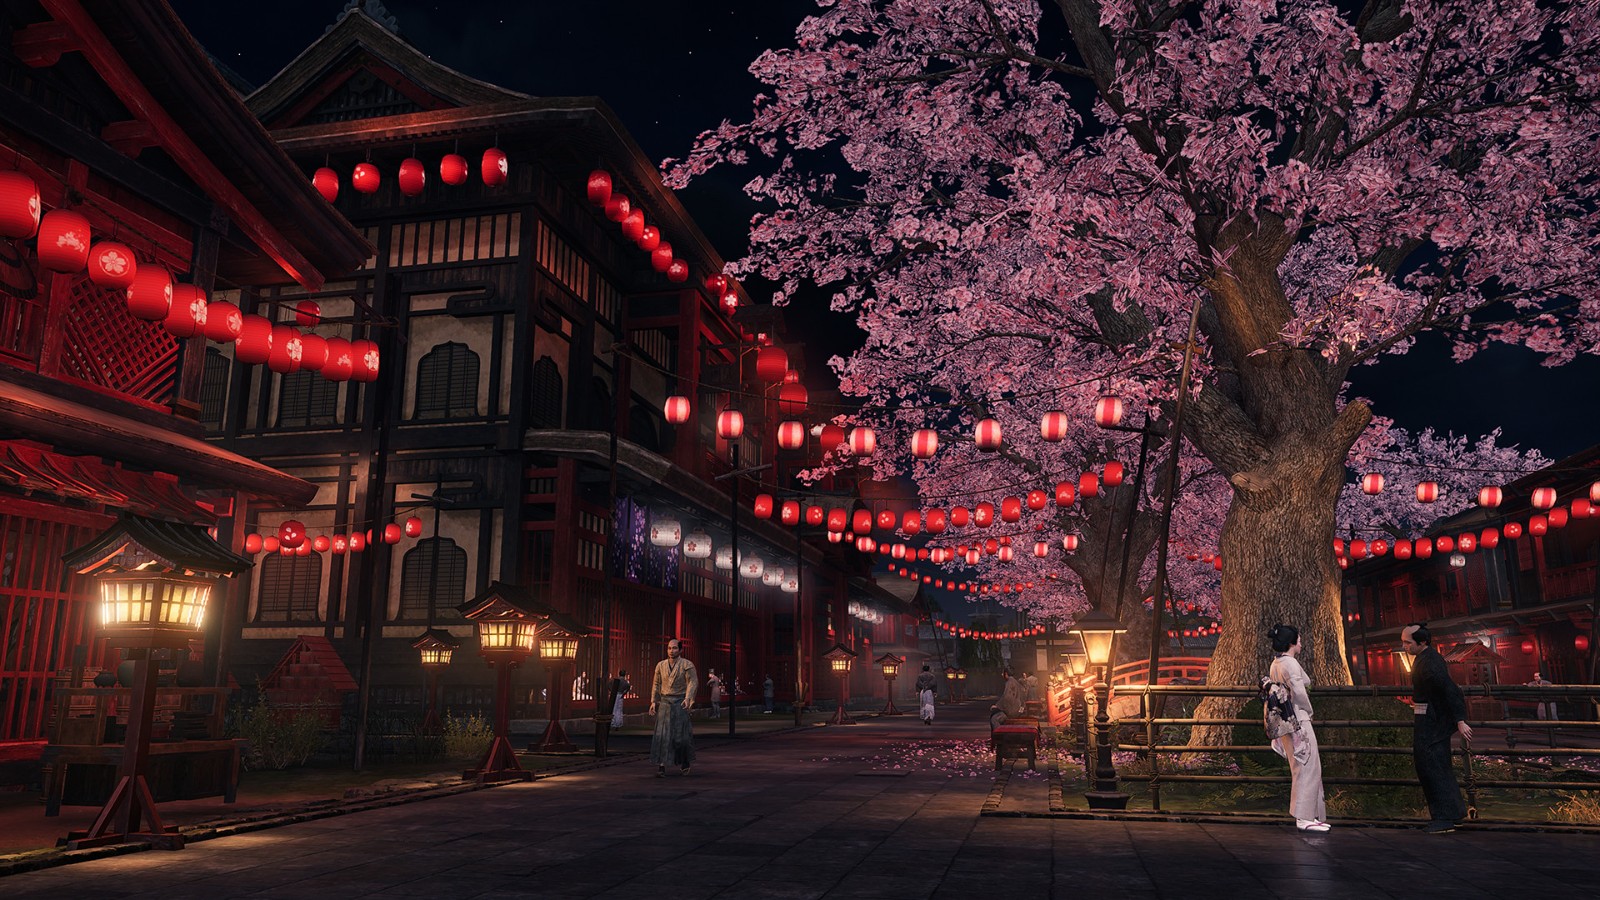 《游怯崛起》若何重现19世纪终的日本 比对于游戏与真践中的江户时期三小大皆市